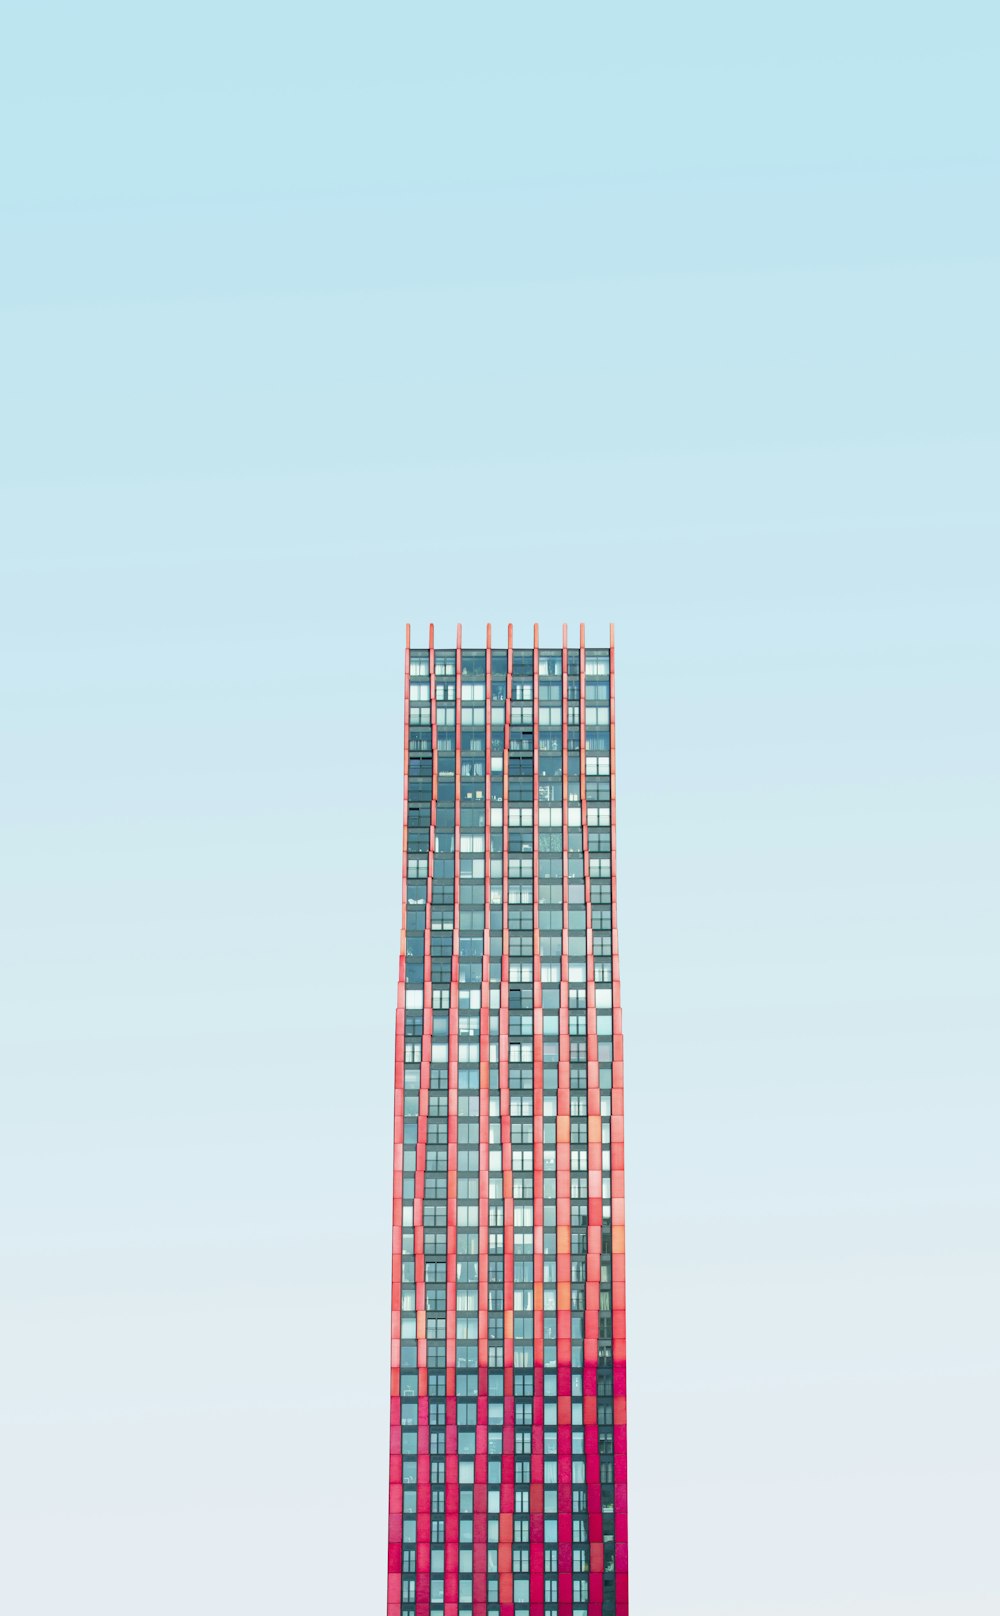 낮 푸른 하늘 아래 고층 건물